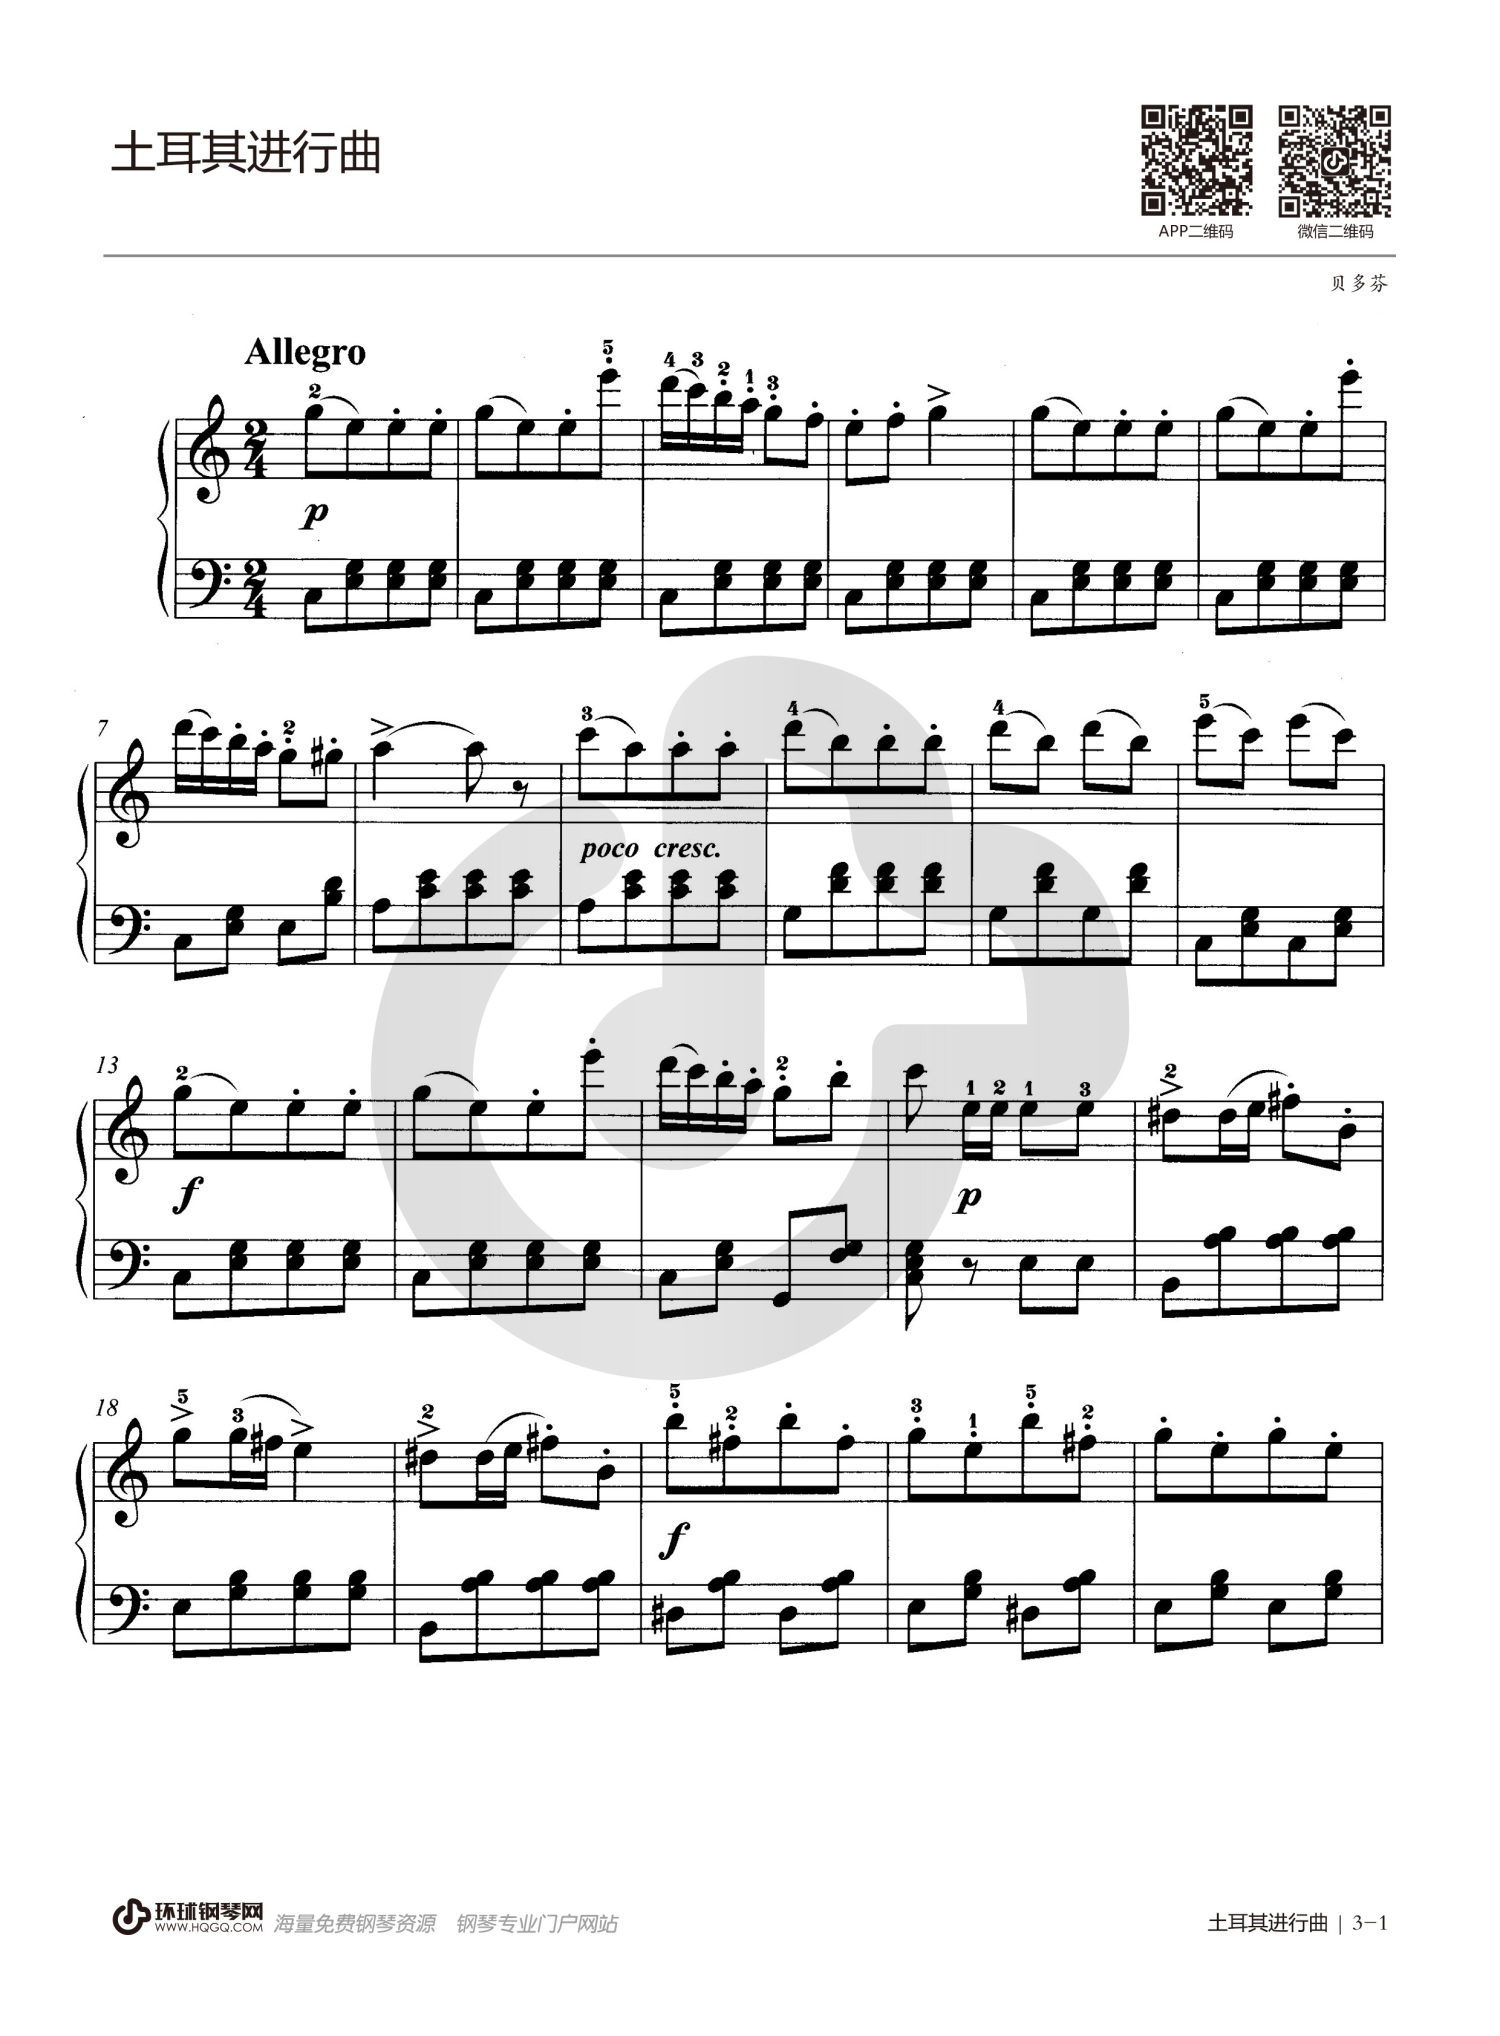 贝多芬《土耳其进行曲》钢琴谱第1张